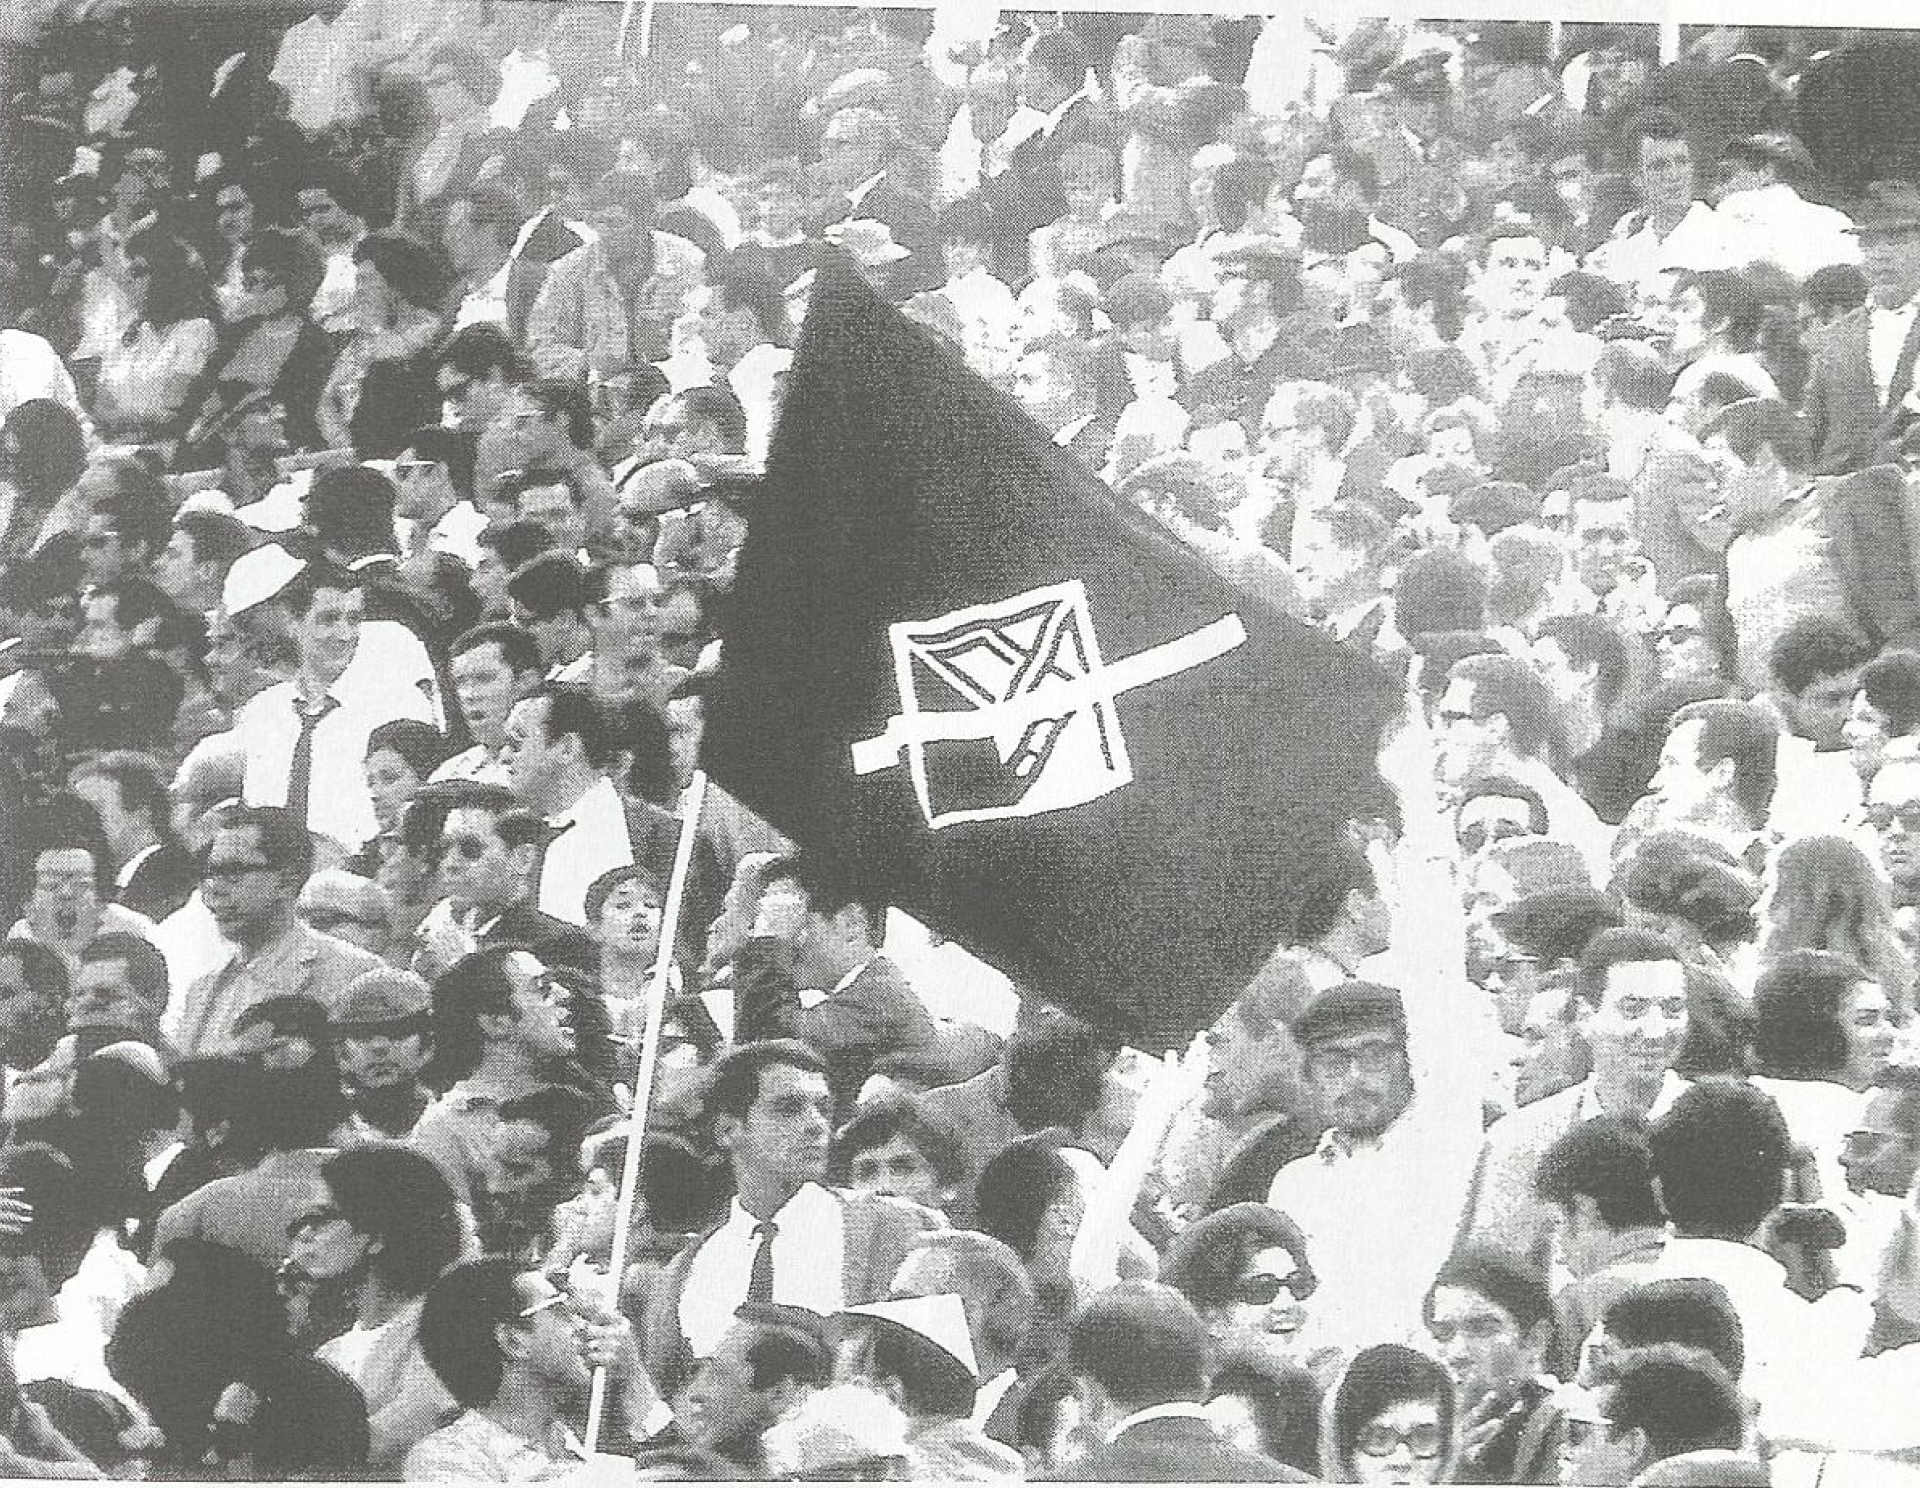 Crise académica Coimbra 1969 (3)